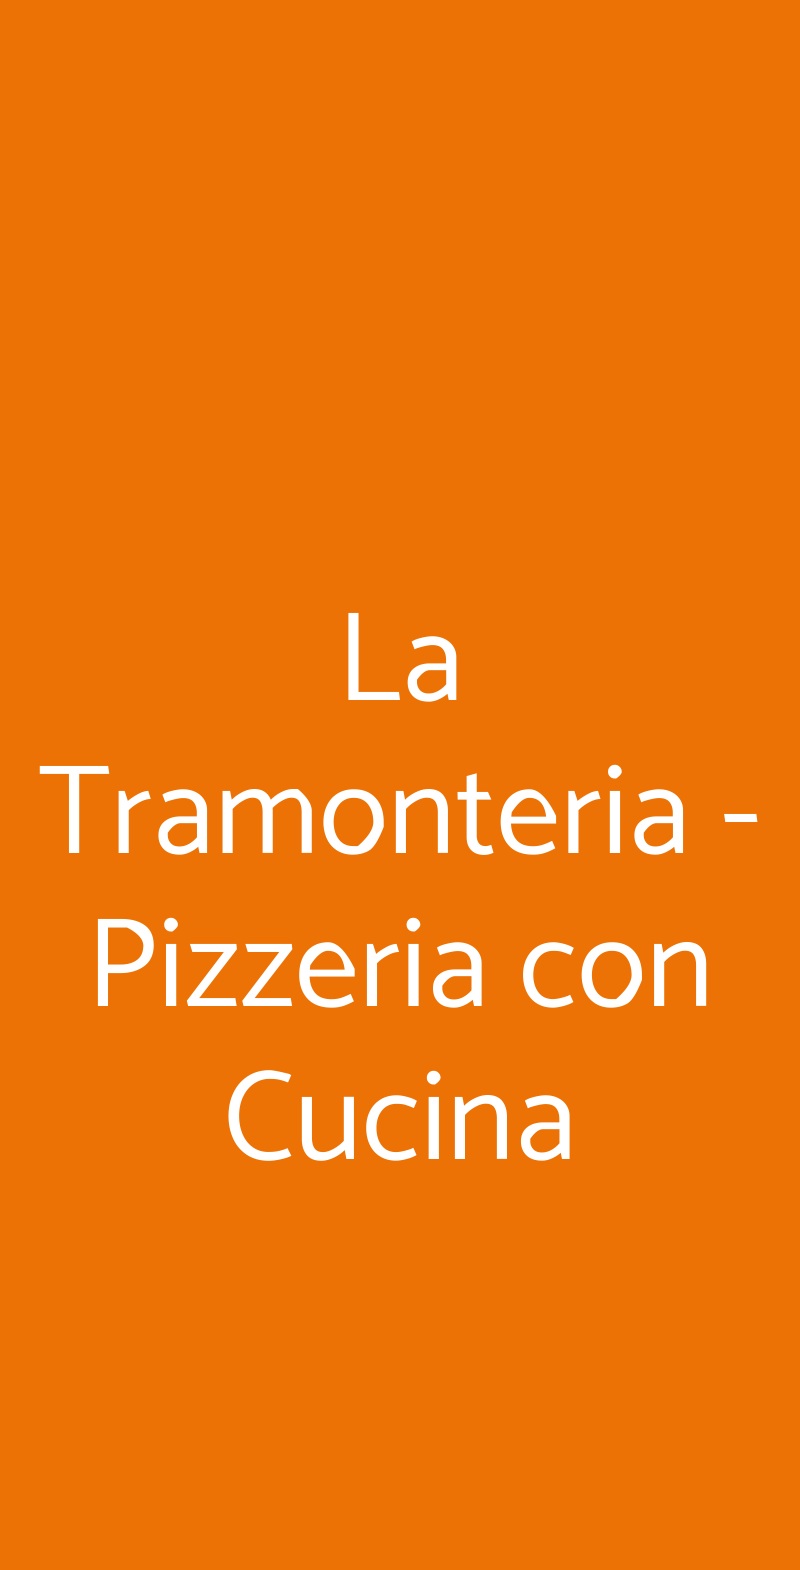 La Tramonteria - Pizzeria con Cucina Longiano menù 1 pagina